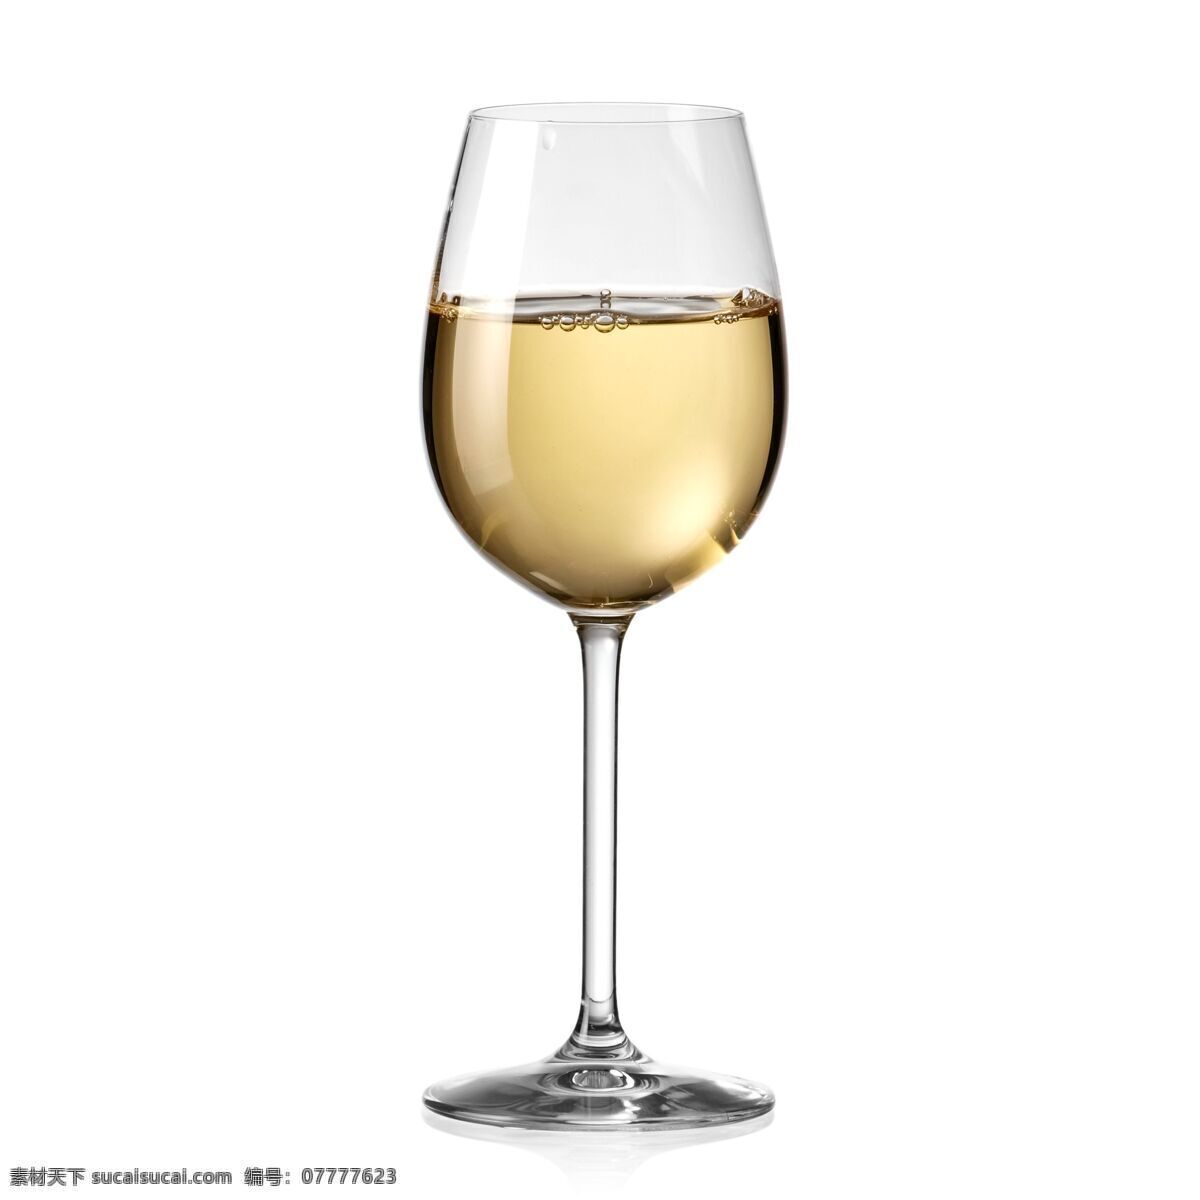 高脚杯 白葡萄酒 葡萄酒 酒杯 酒水 酒